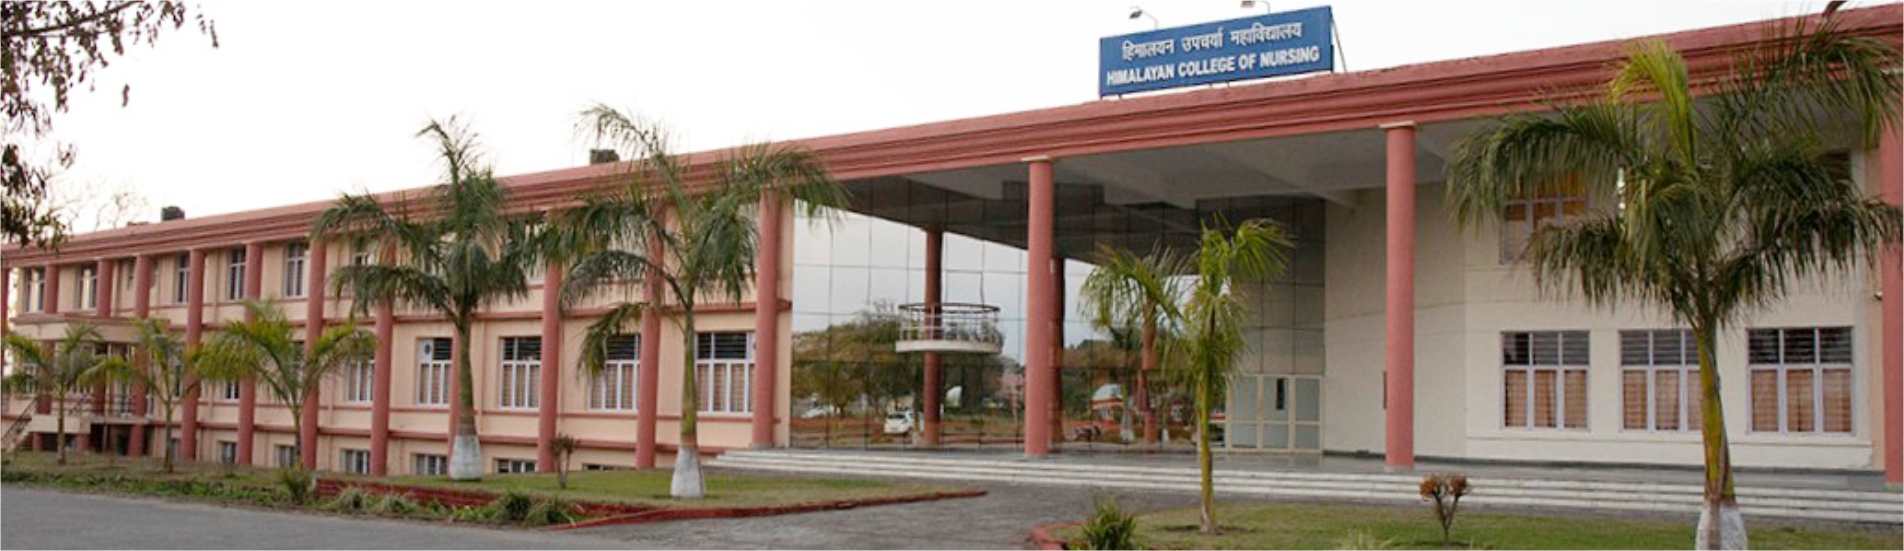 Himalayan College of Nursing Building Exterior